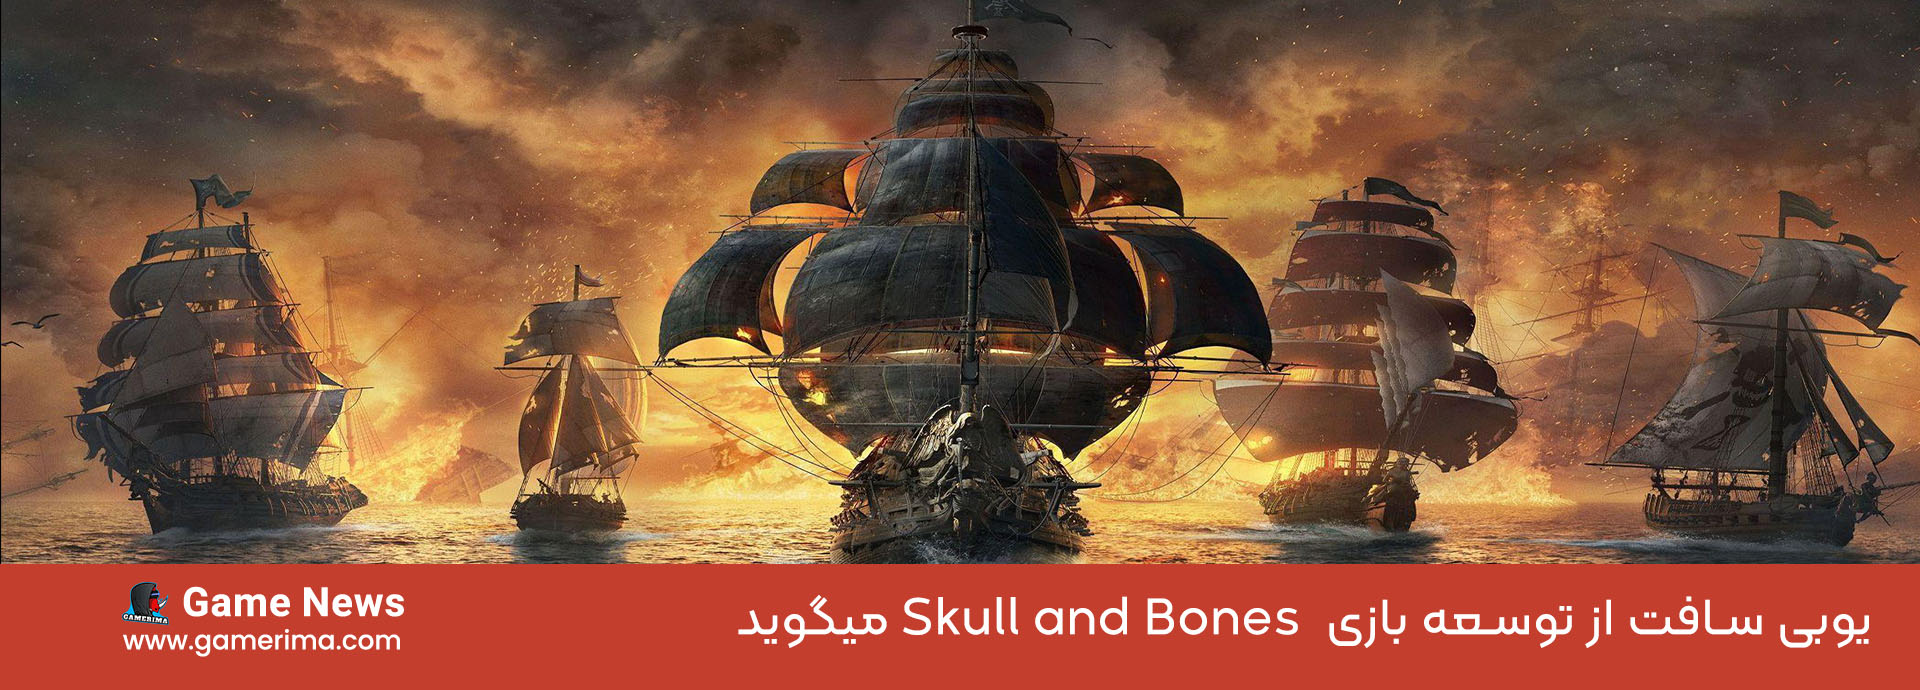 اخبار Skull and Bones